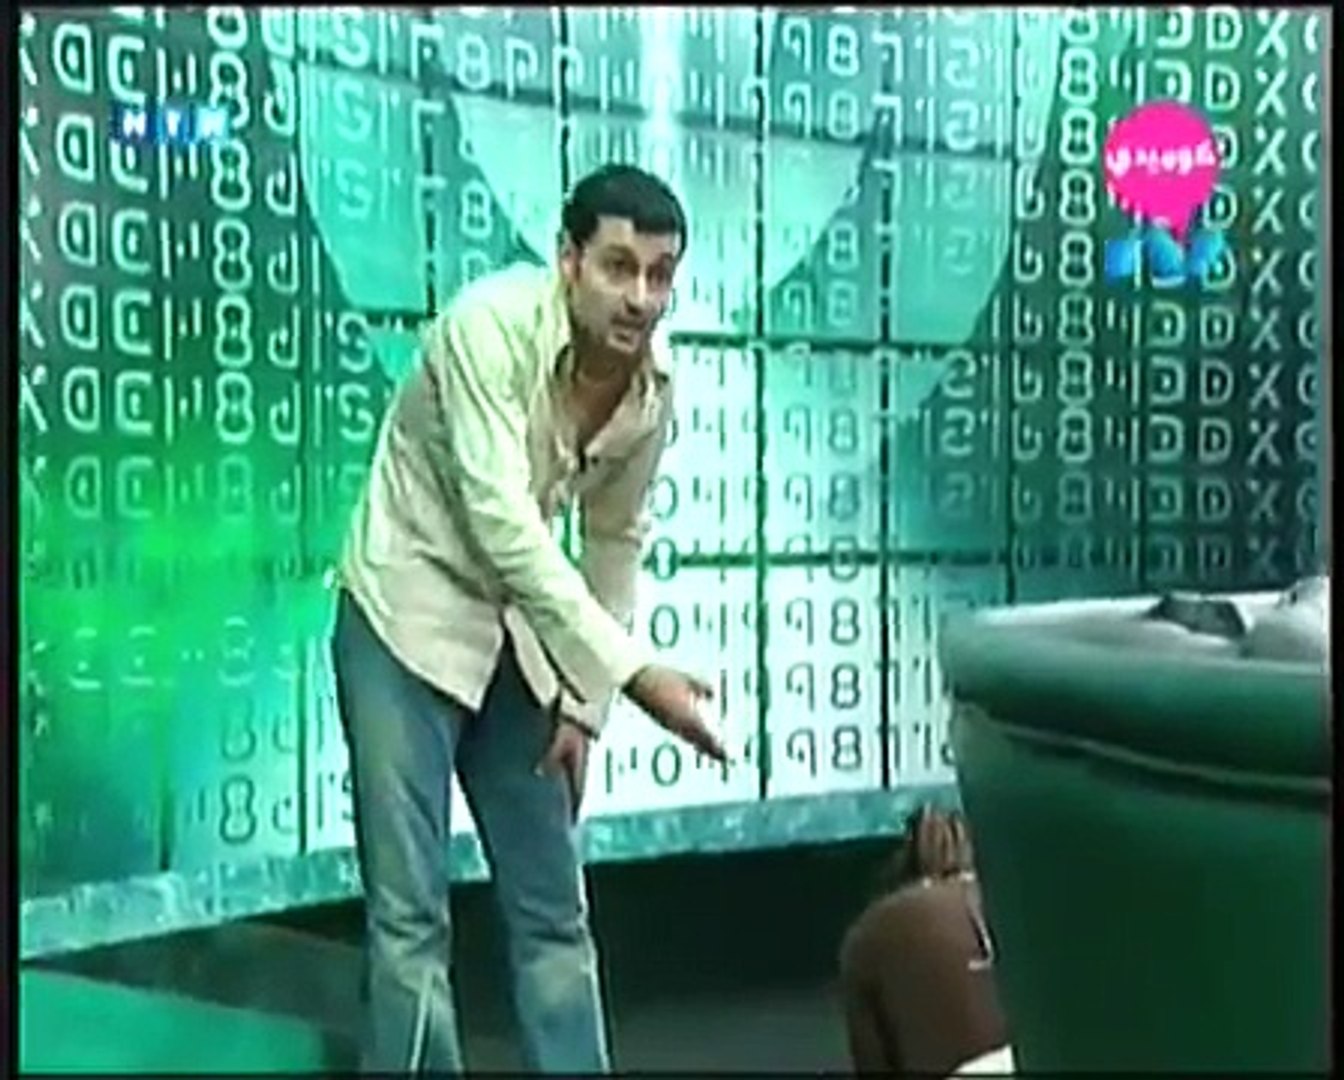 برنامج حسين فى الاستوديو حلقة رامز جلال ج2من3 - video Dailymotion